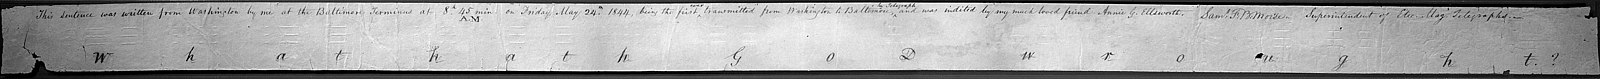 Morse első távirata, amit Washingtonból Baltimore-ba küldött 1844. május 24-én reggel 8 óra 45 perckor. A szöveg: "What hath God wrought?" (Mit mívelt Isten?)